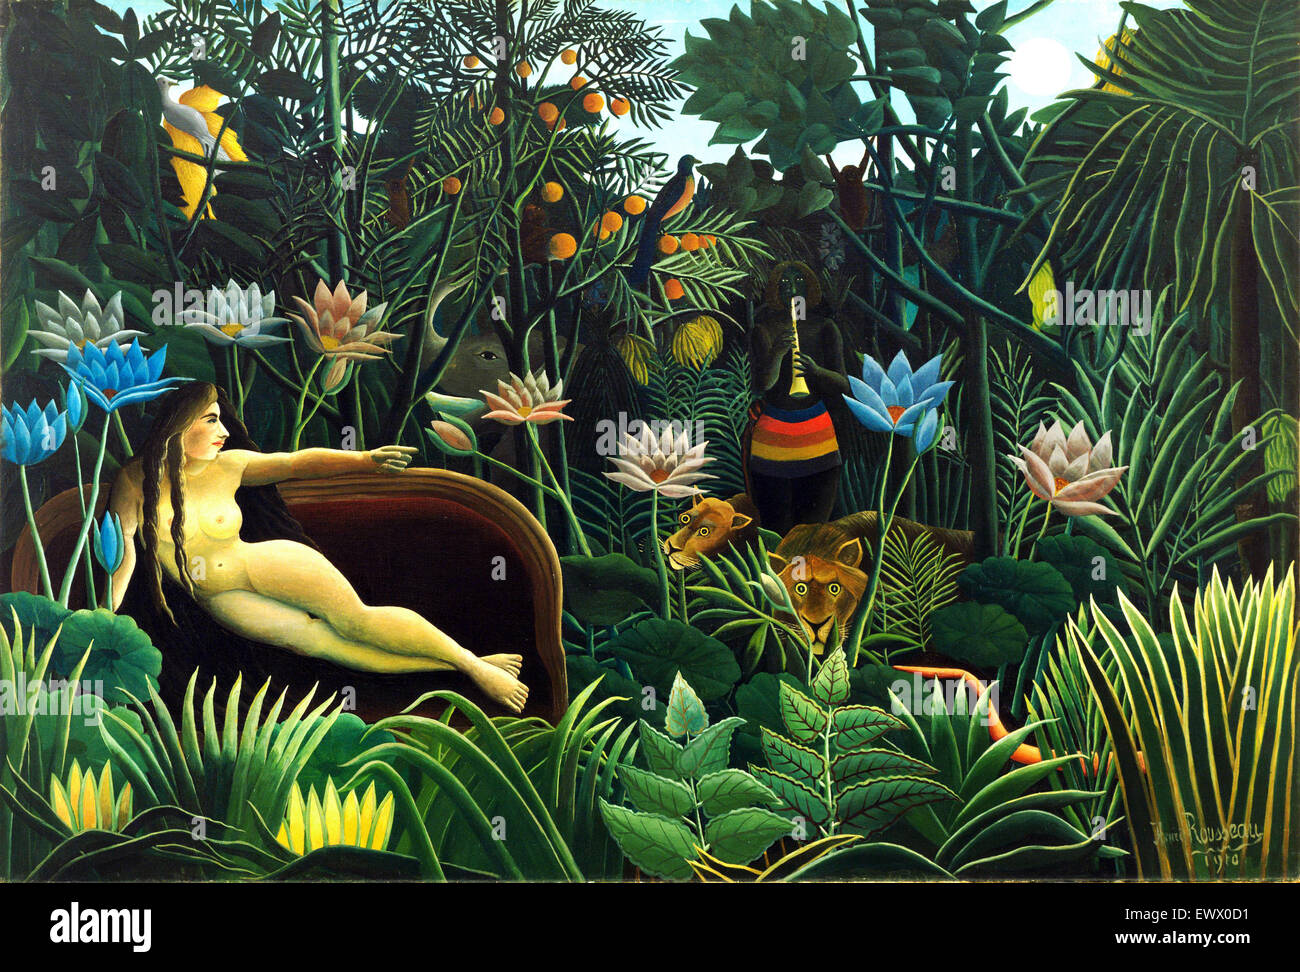 Henri Rousseau le rêve, 1910 huile sur toile. Le Museum of Modern Art, New York, USA. Banque D'Images